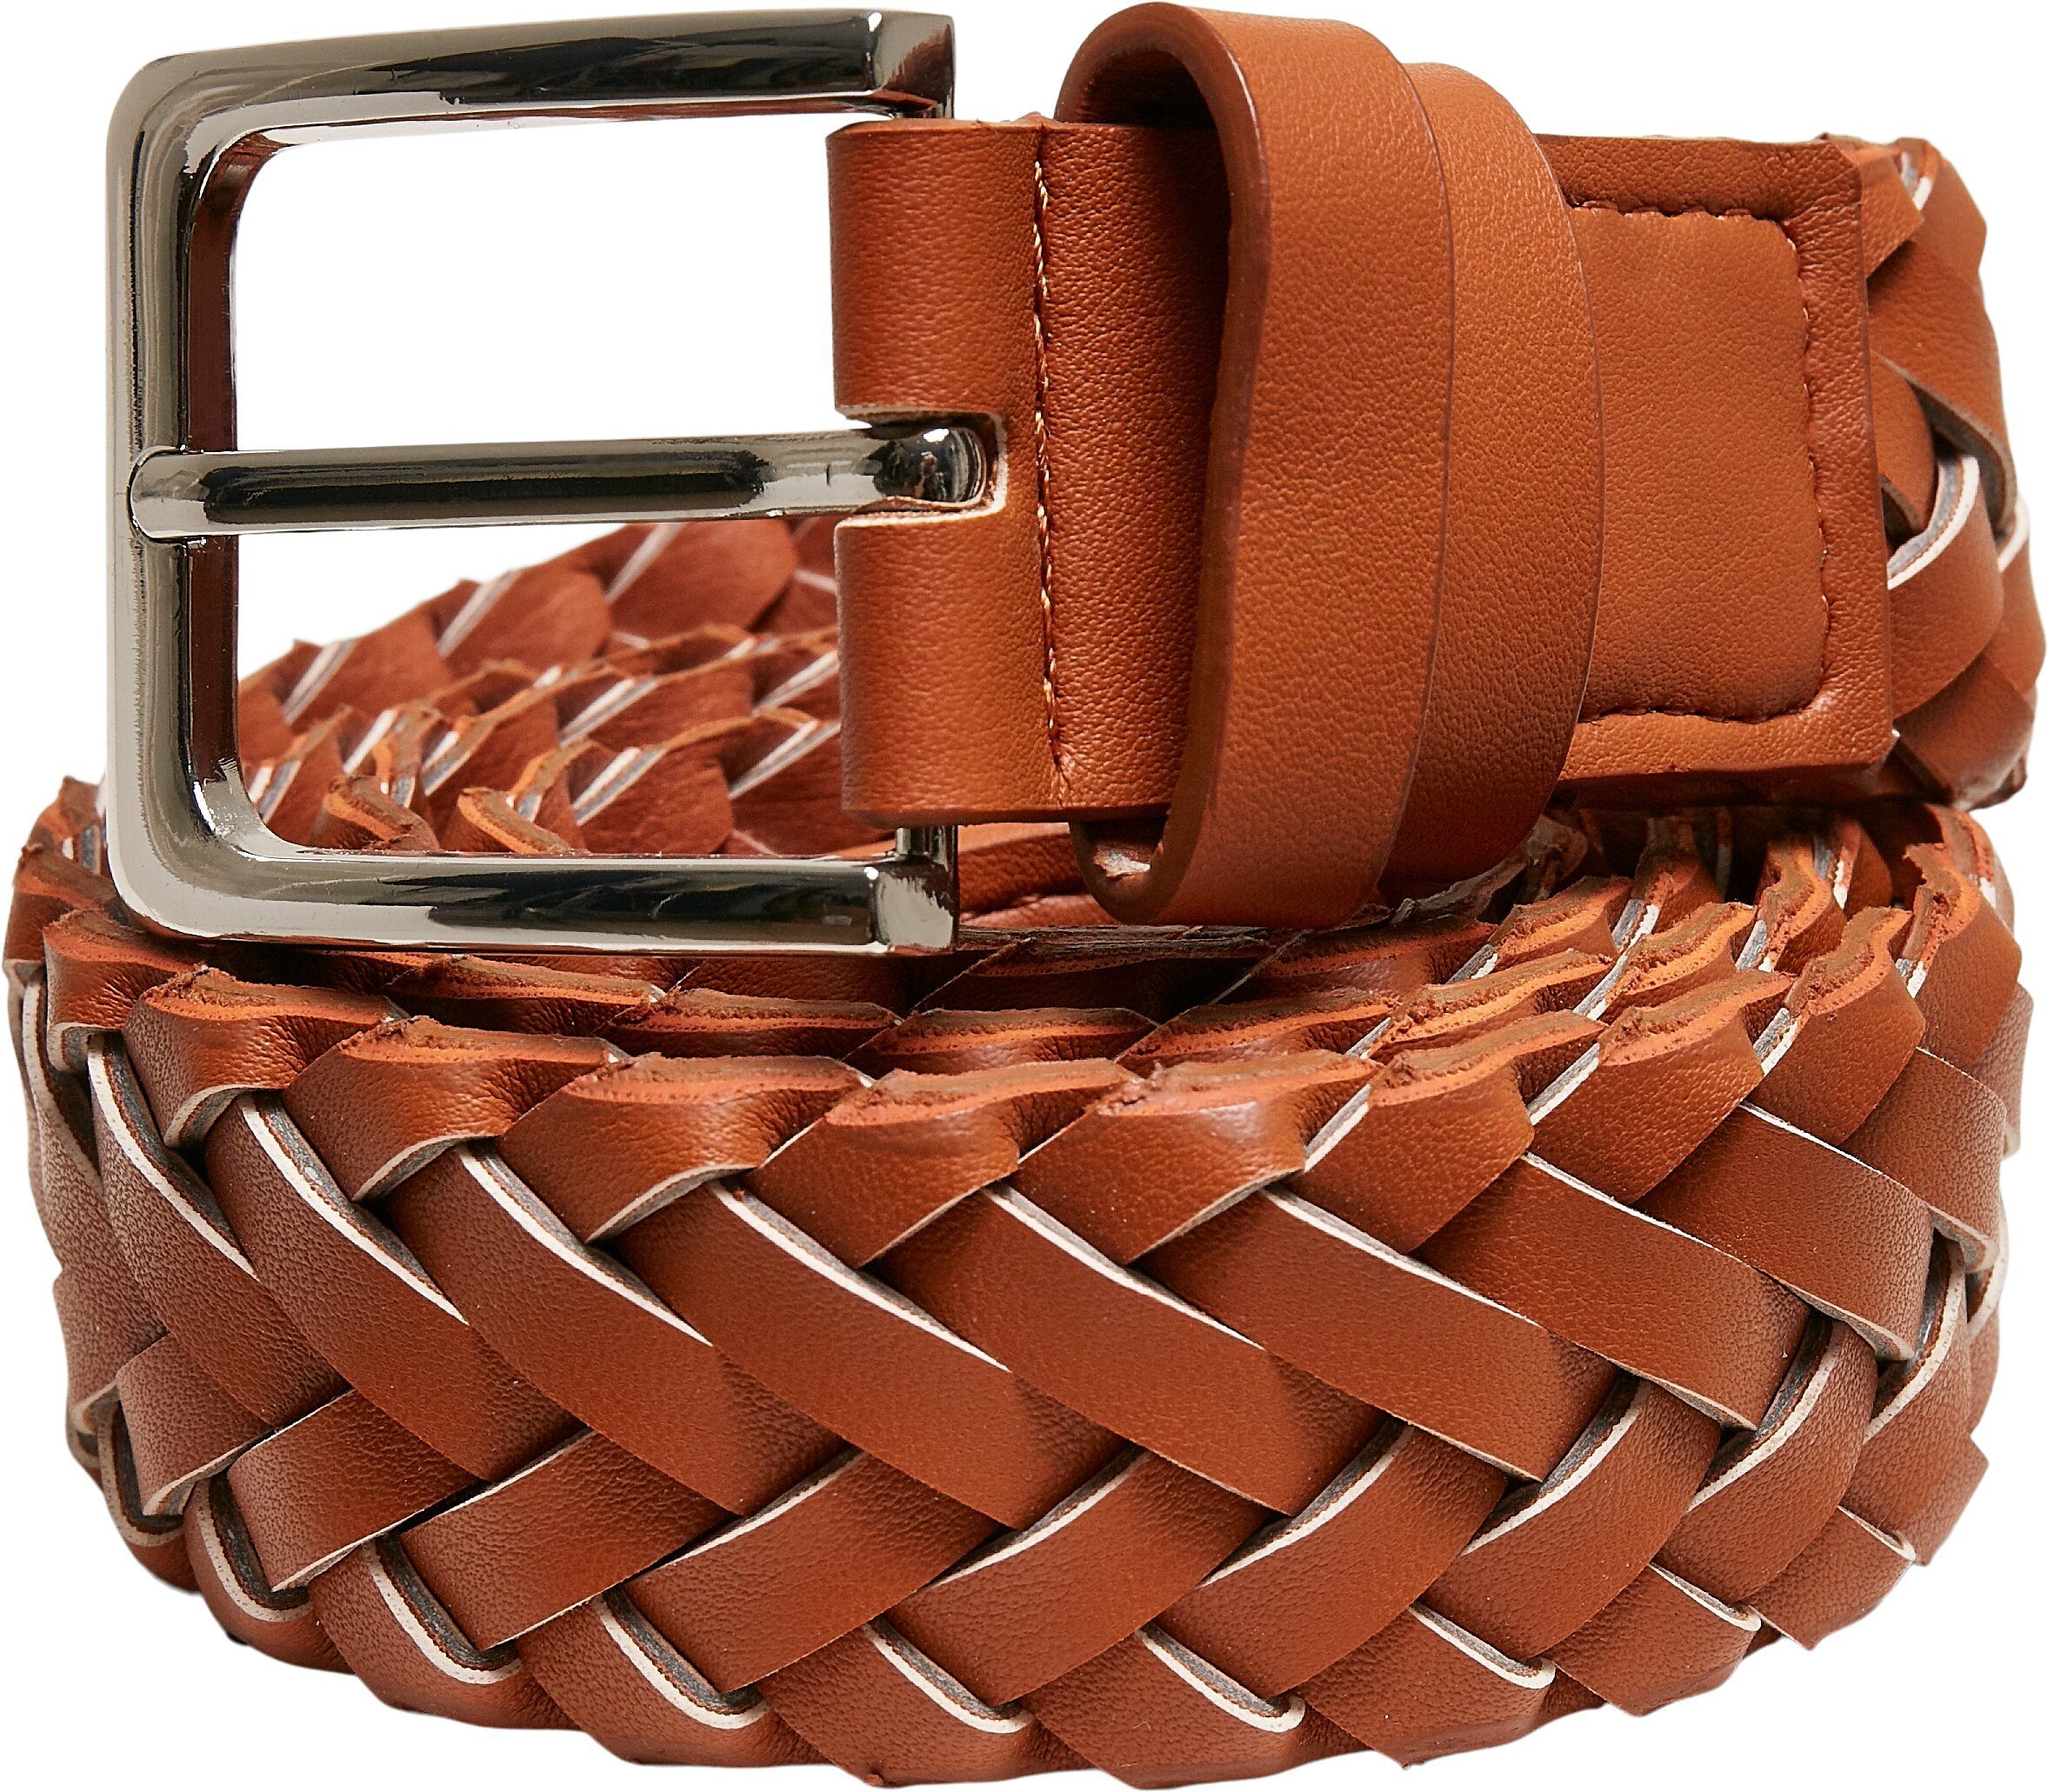 Synthetic Belt, Gegenstände um URBAN Accessoire, Hüftgürtel CLASSICS befestigen Accessoires Praktisches Braided Leather zu